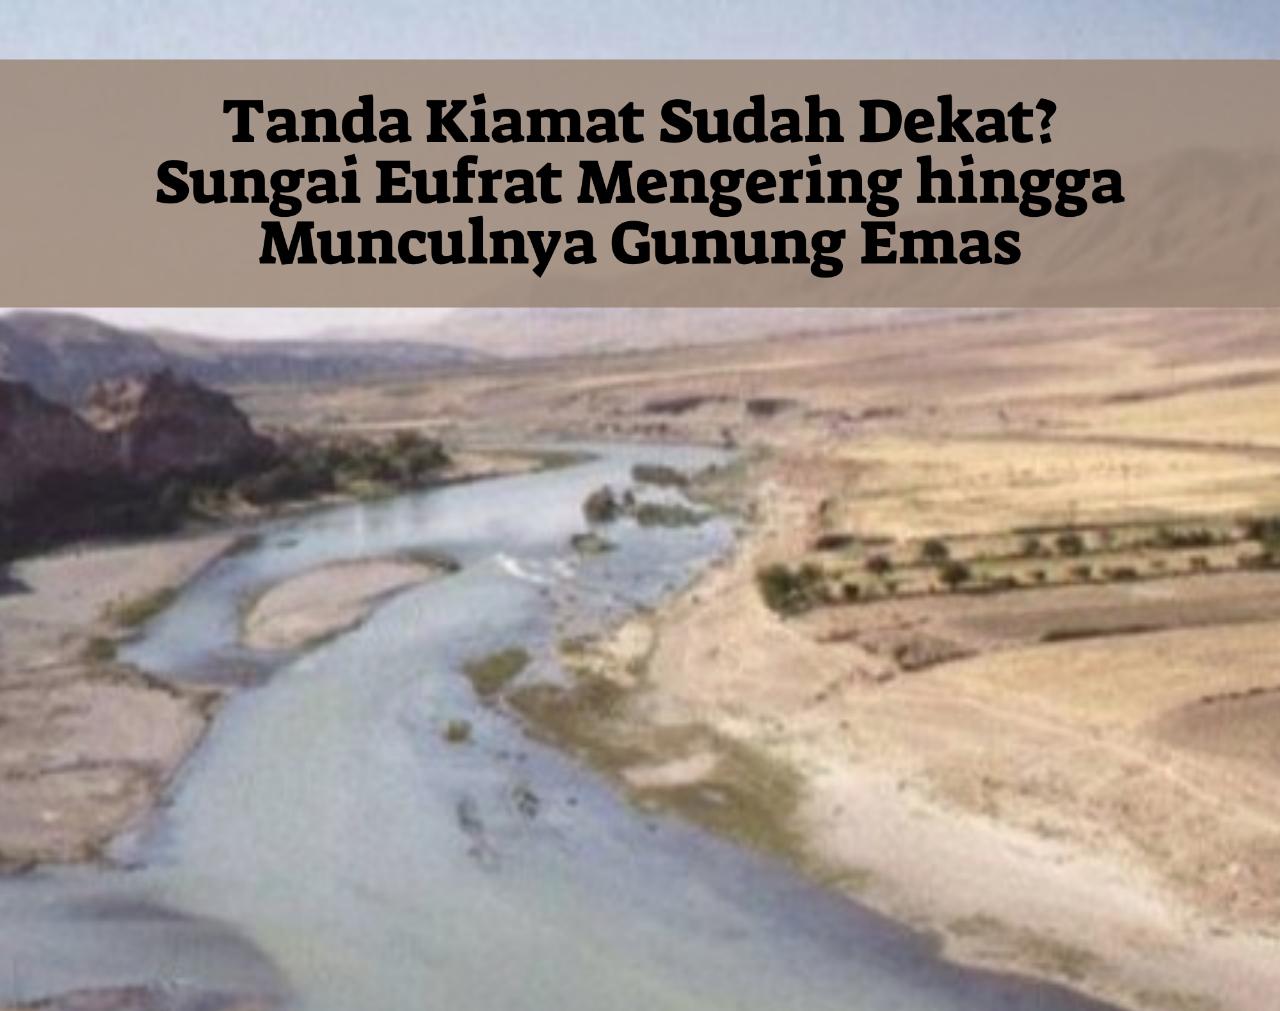 Tanda Kiamat Sudah Ada? Sungai Eufrat Mengering hingga Munculnya Gunung Emas